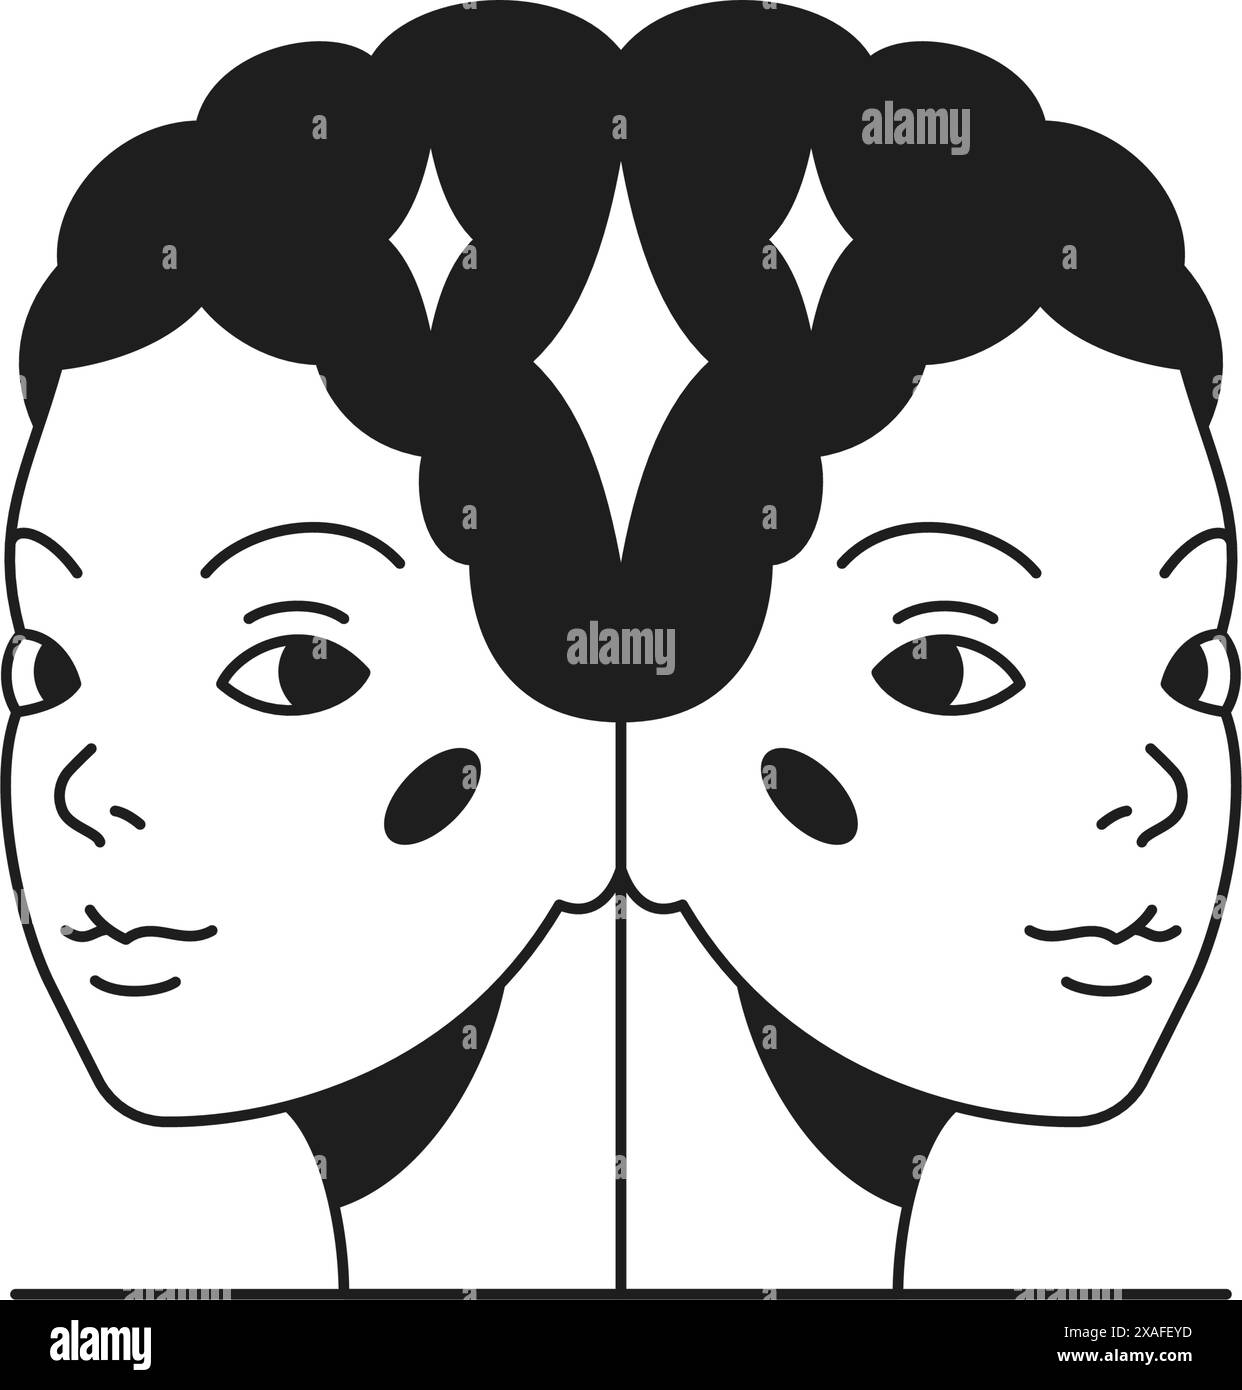 Y2K Magic Woman jumeaux face psychédélique monochrome ligne rétro groovy icône illustration vectorielle. Fantaisie bizarre surréaliste portrait féminin sacré hallucinoge Illustration de Vecteur